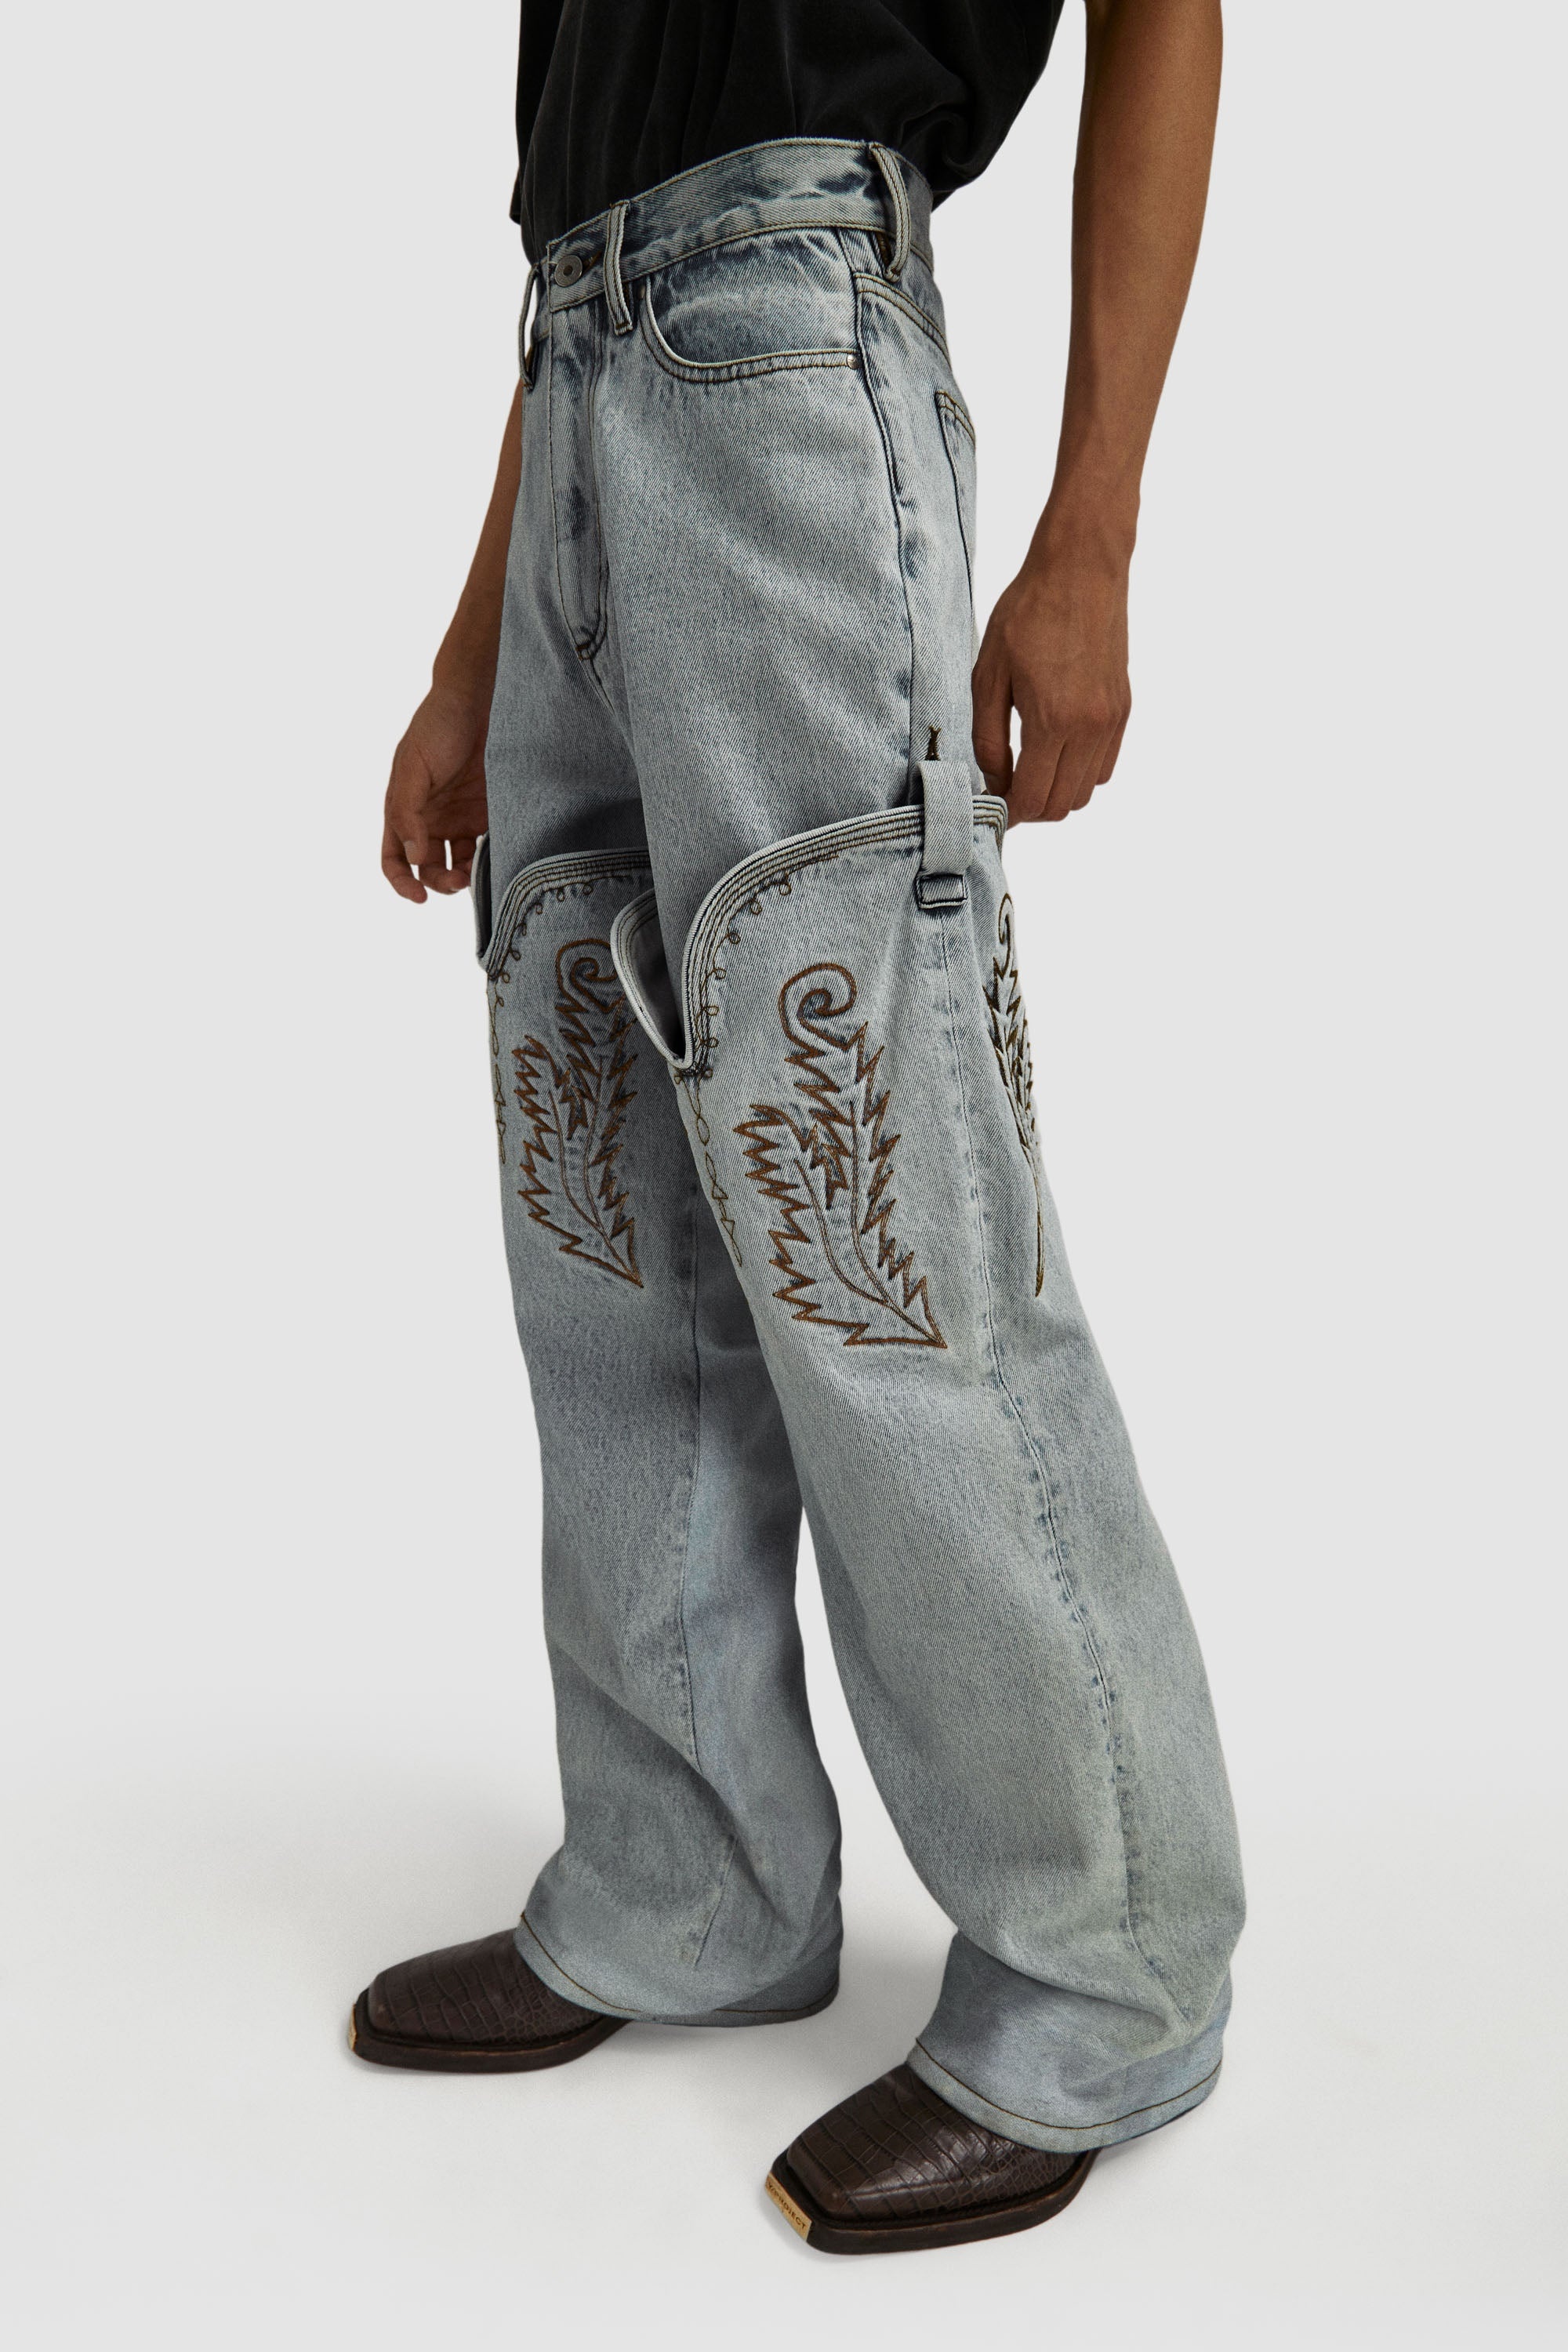 y/project 22aw cowboy cuff jeans | marketingparafotografos.com.br